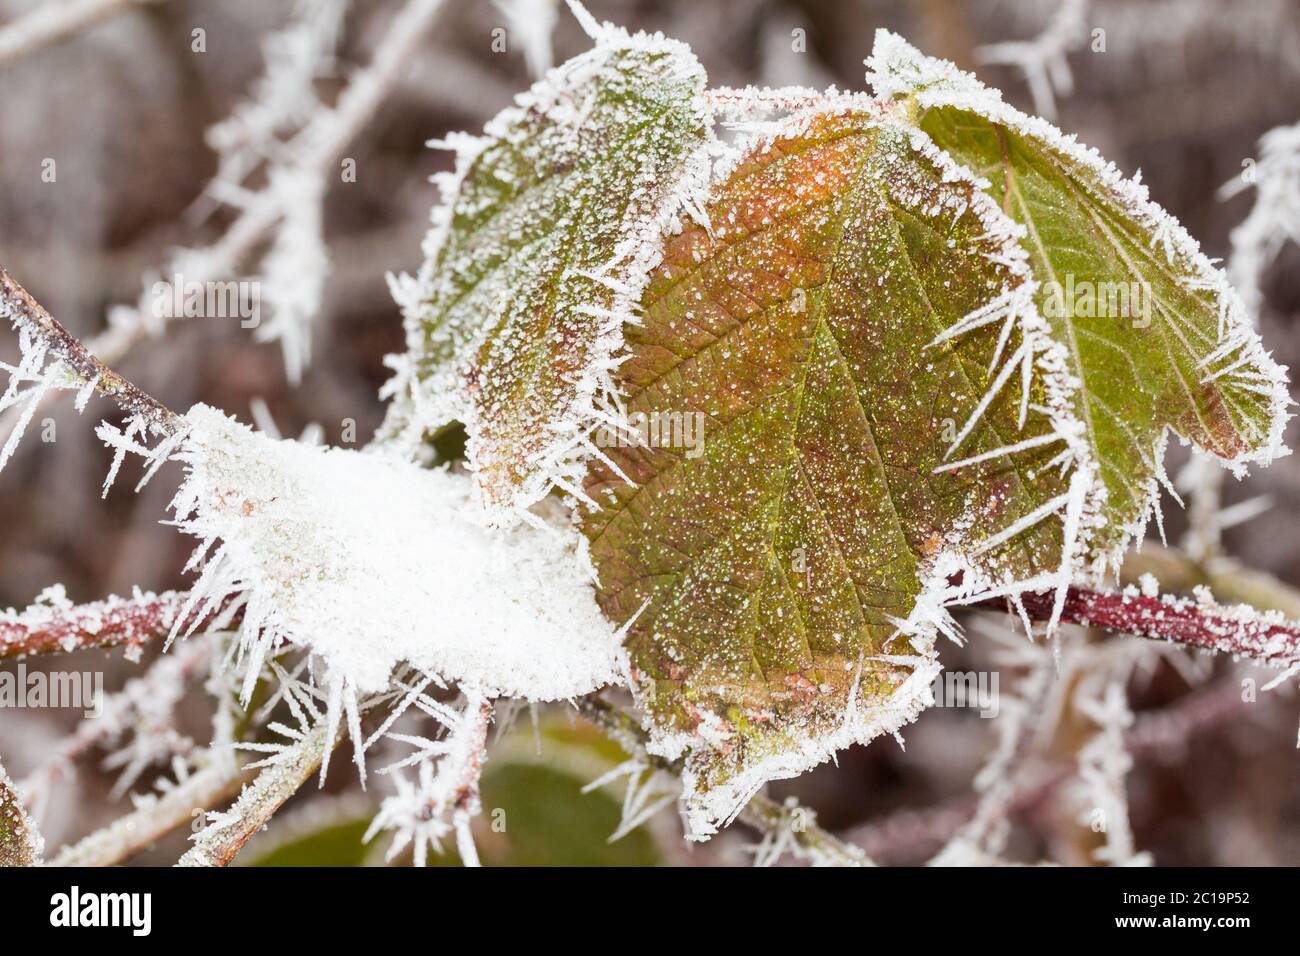 blackberry bush in winter Stock Photo